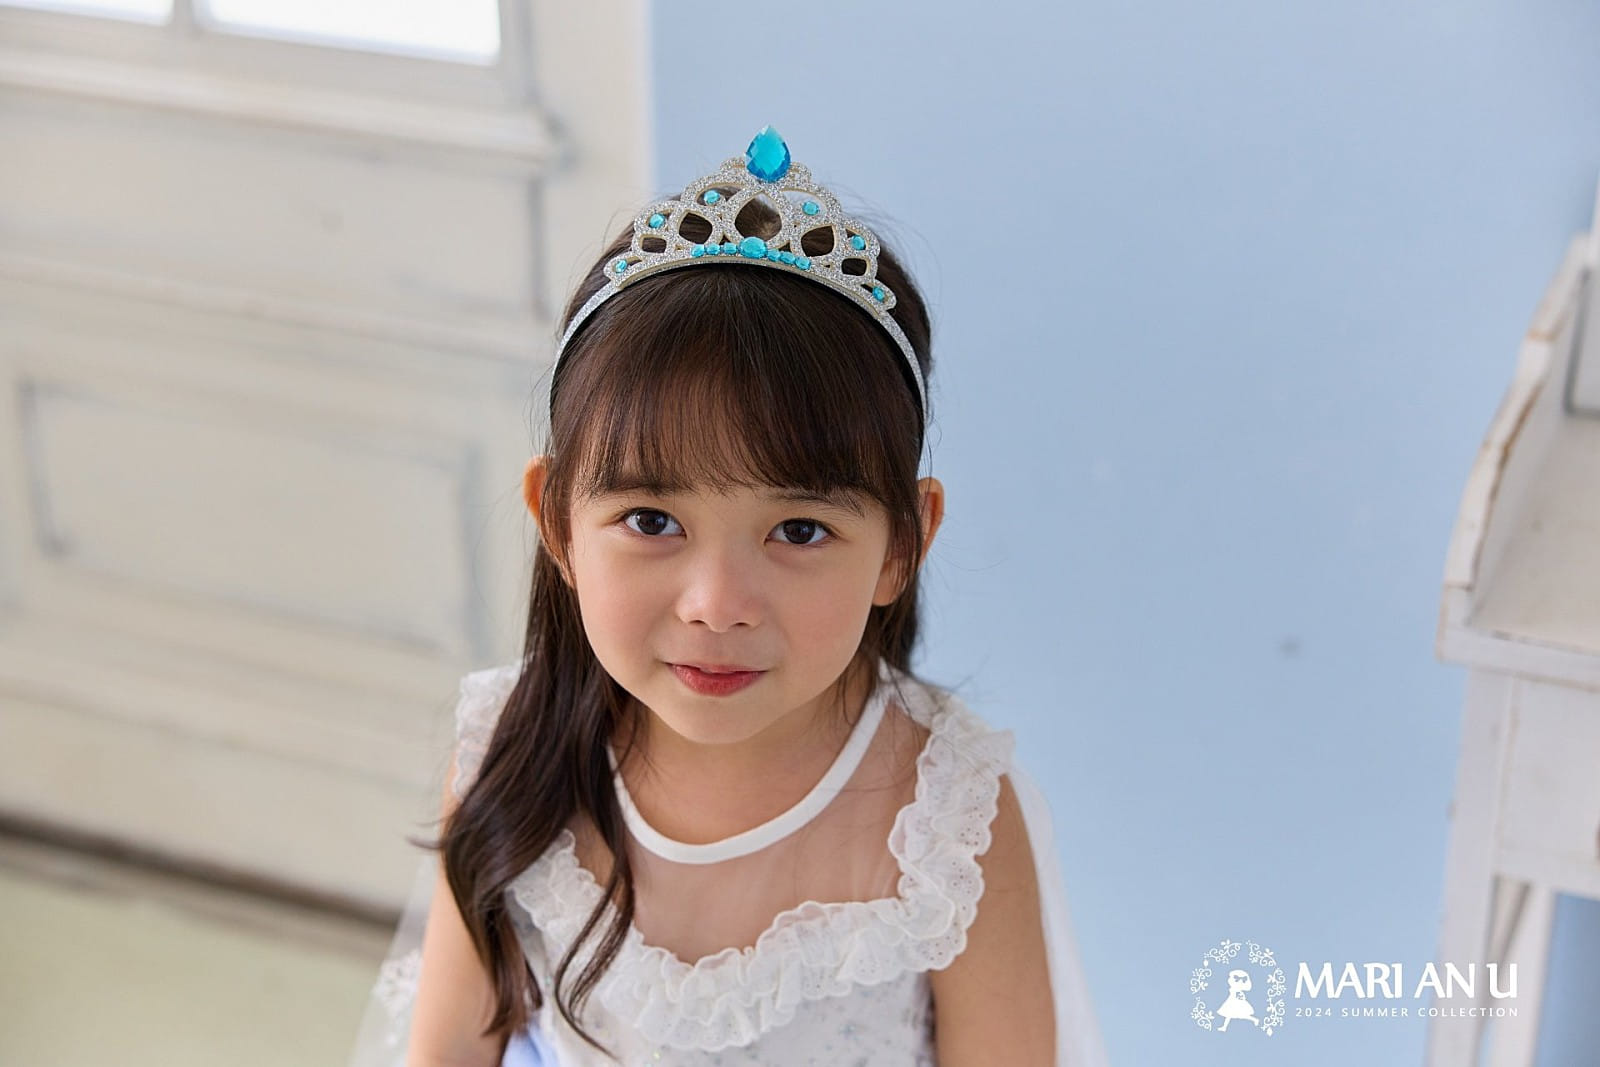 Mari An U - Korean Children Fashion - #kidsshorts - Bling Princess Crown - 3